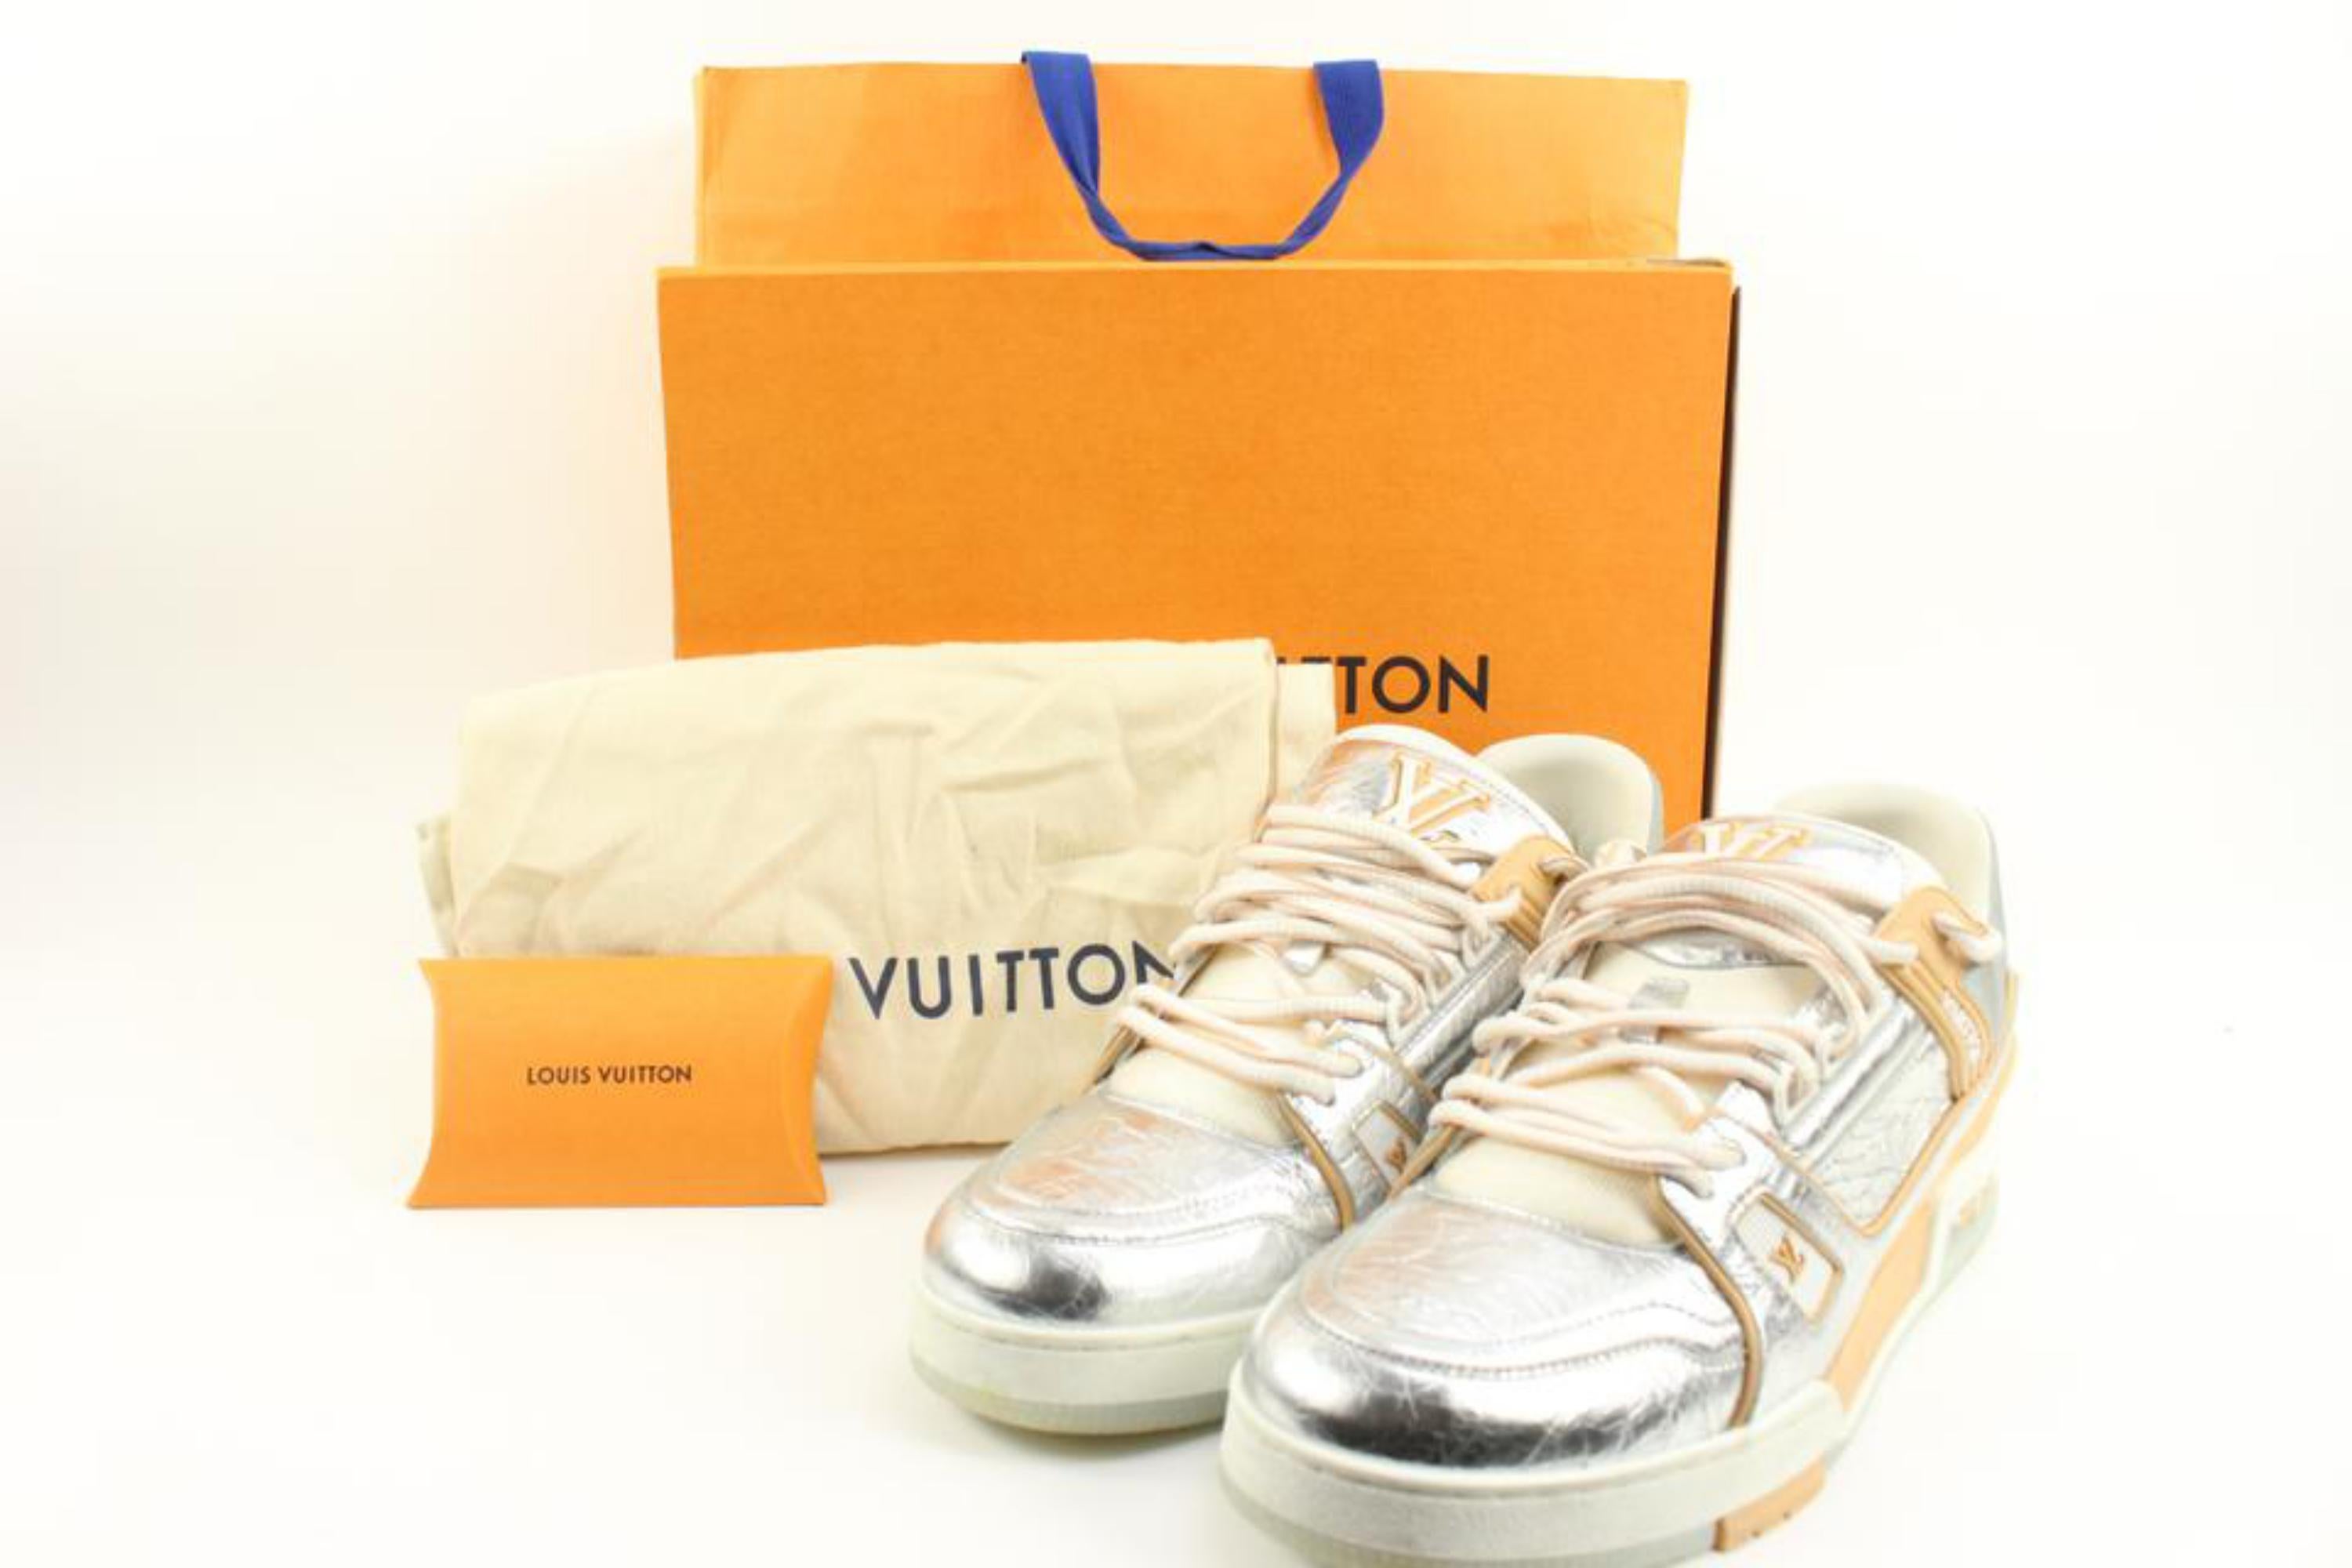 Louis Vuitton Mens Croc Embossed Sneakers . LV 10, US 11.